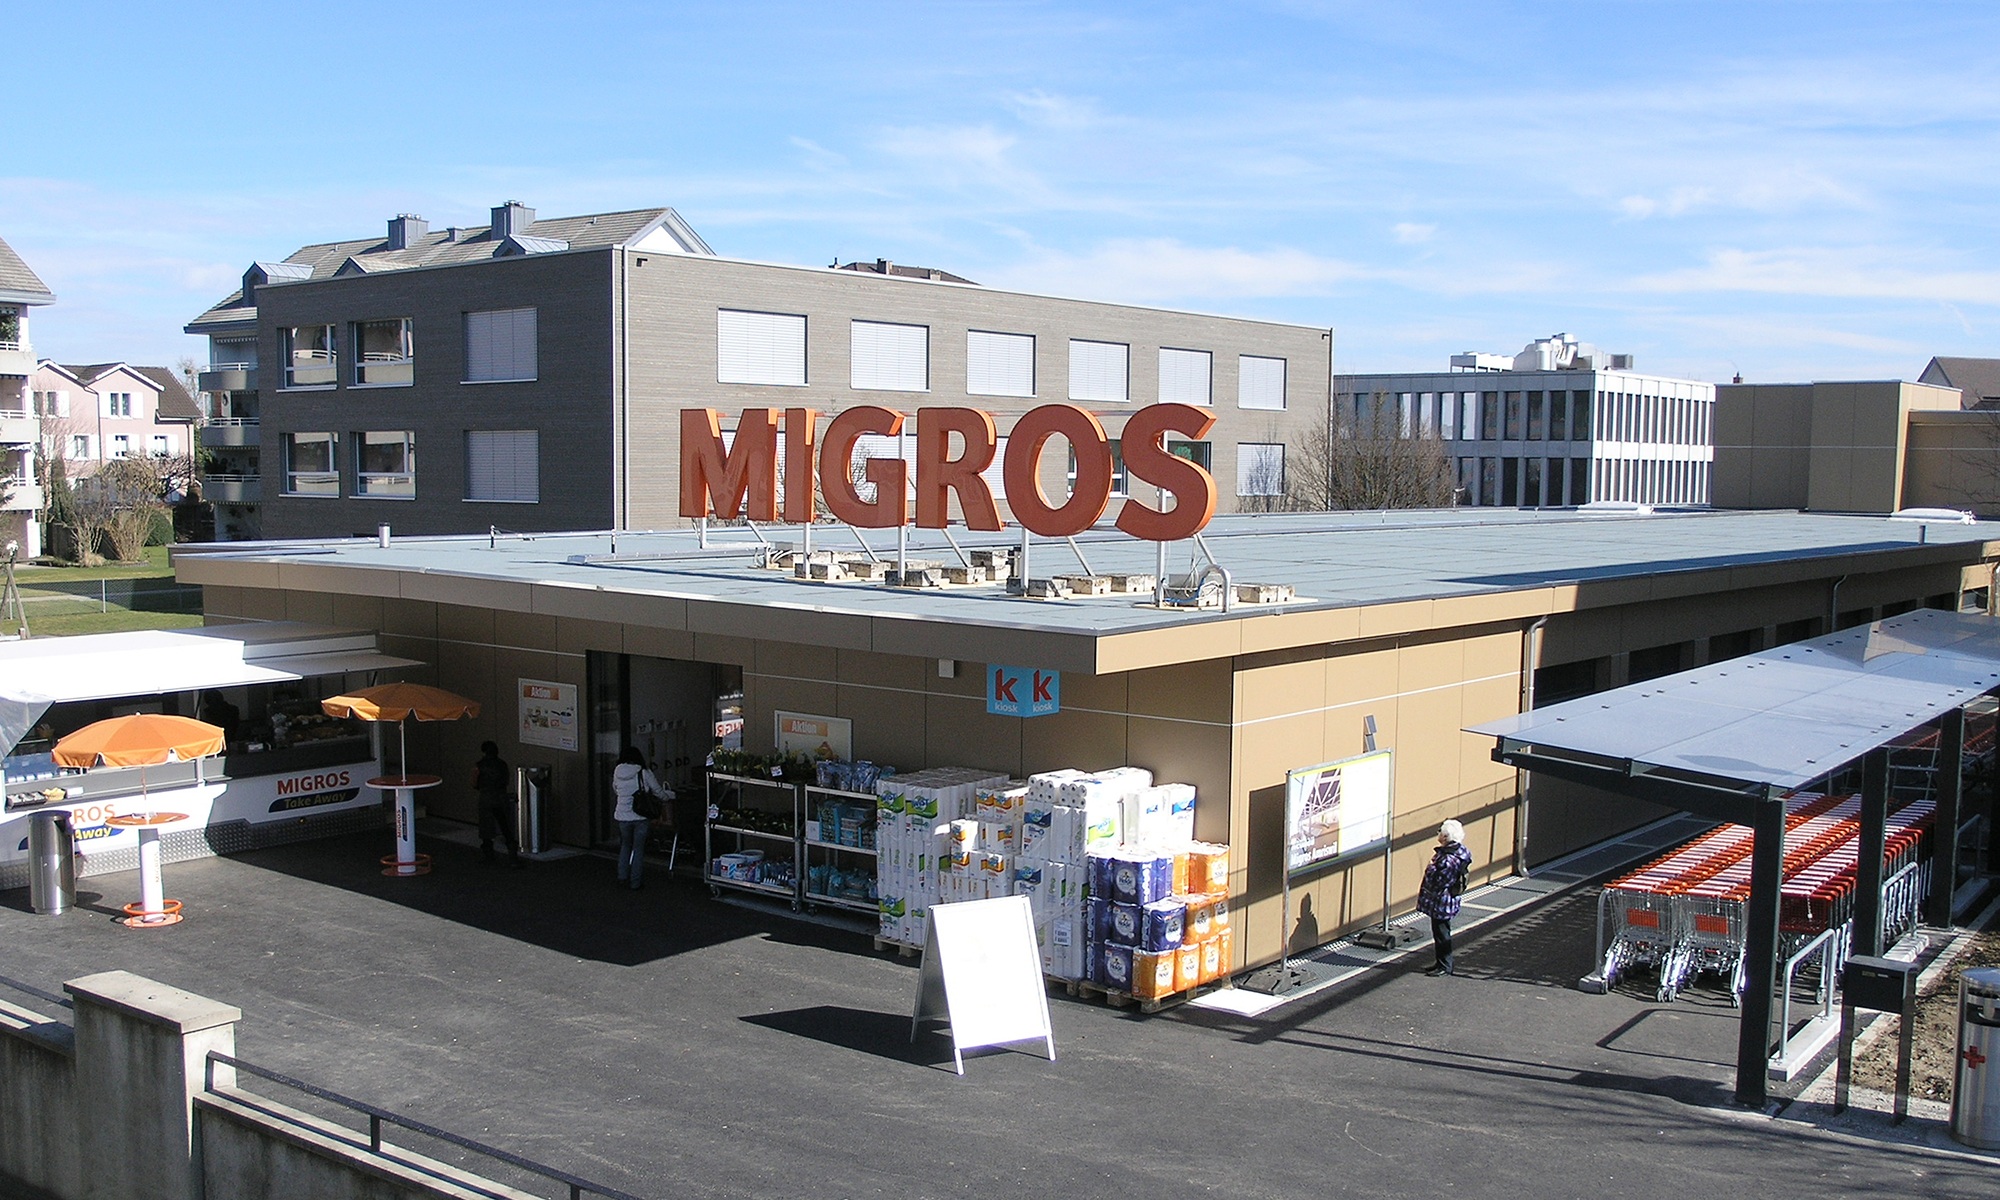 Das Migros Verkaufsprovisorium während Ladenöffnungszeiten. Gesamtansicht von vorne oben.